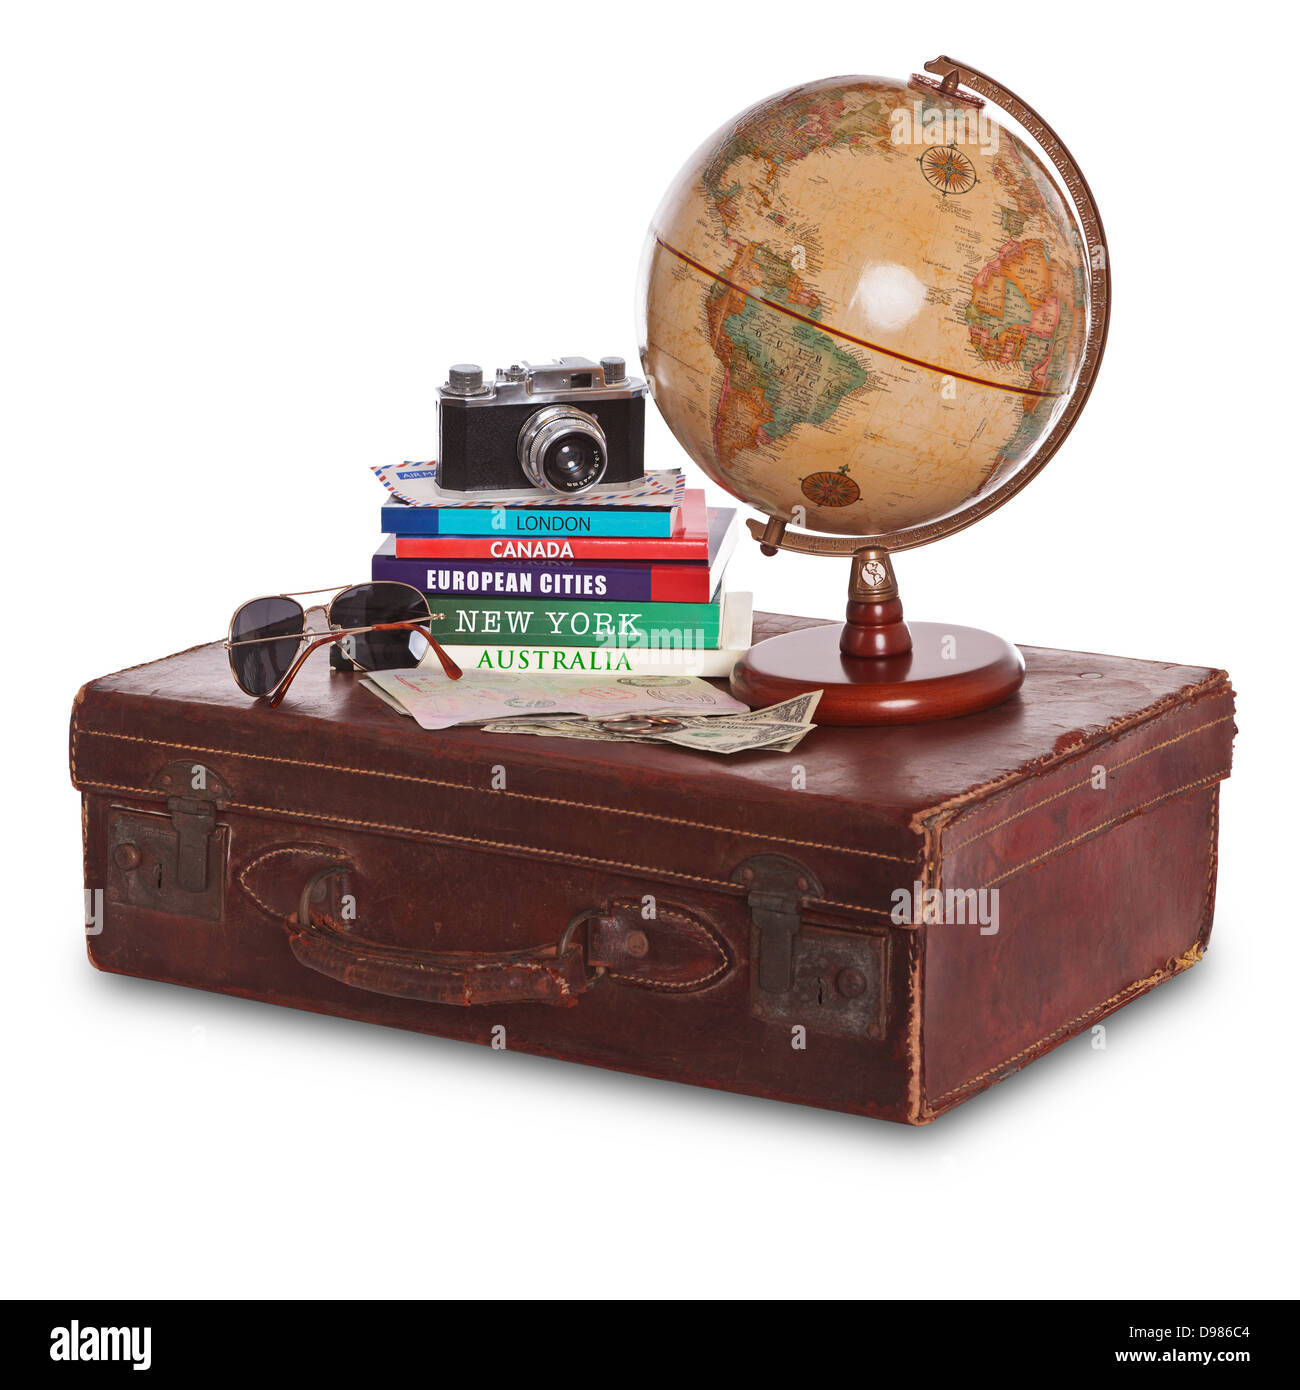 La nature morte photo d'une vieille valise en cuir brun avec un appareil photo, guides de voyage, globe terrestre, lunettes de soleil, passeport estampillé et paiement Banque D'Images